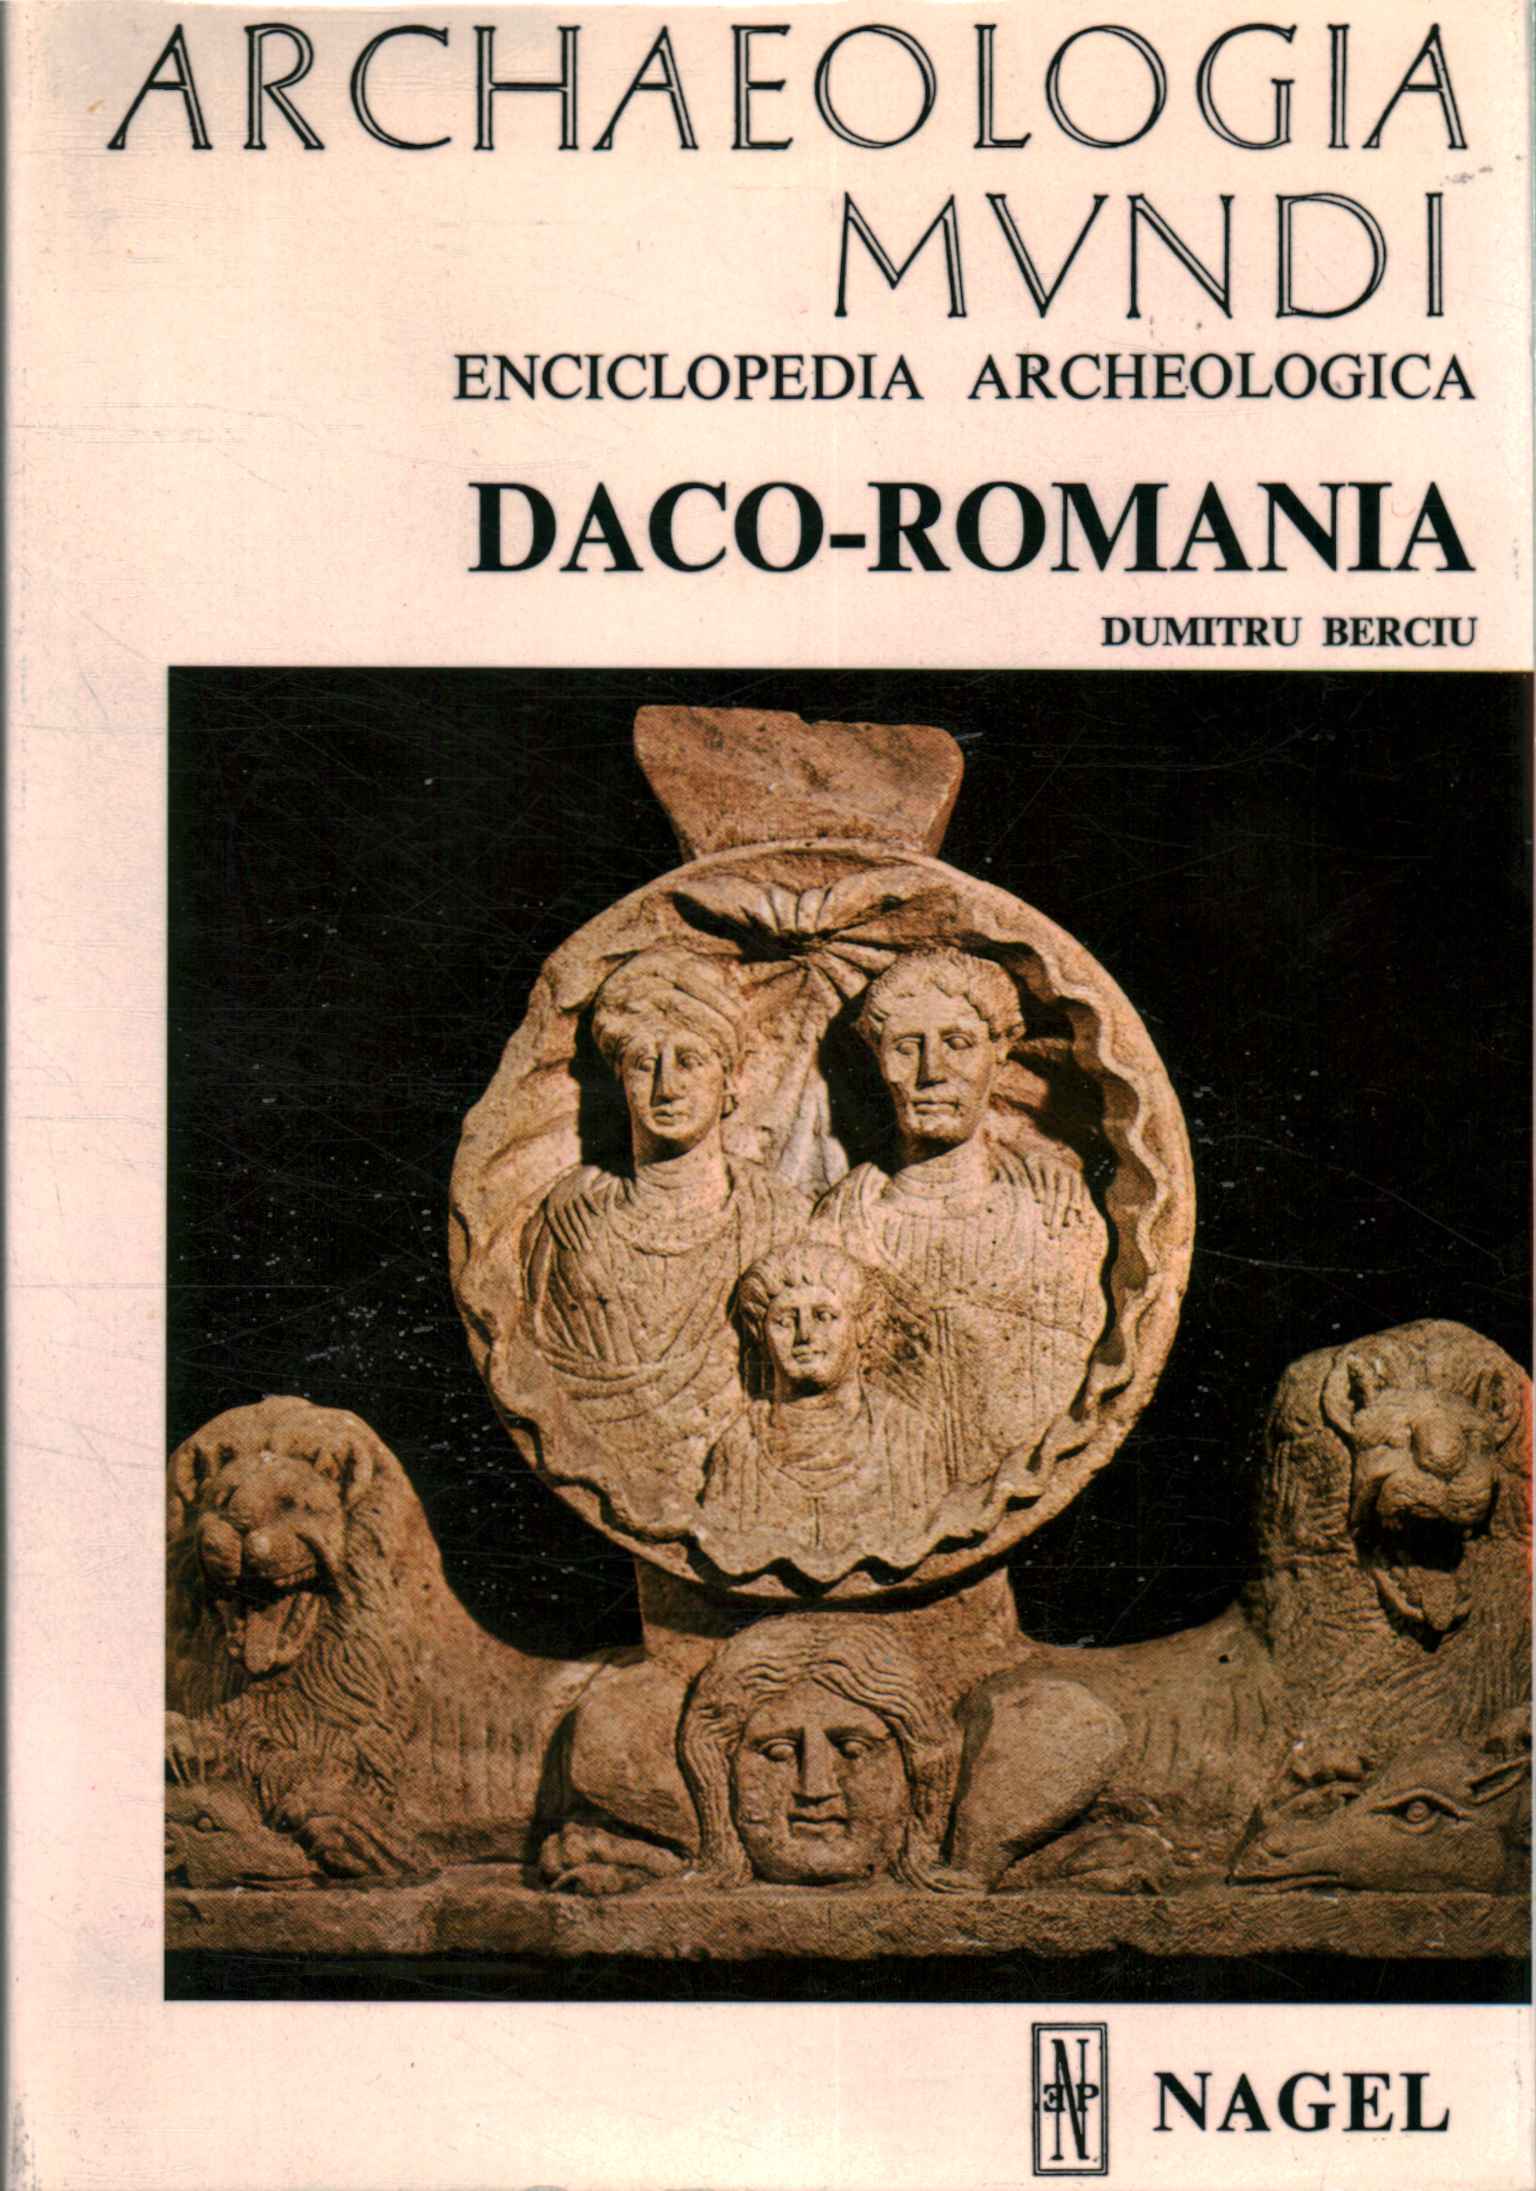 Archäologische Enzyklopädie. Daco-Rumänien